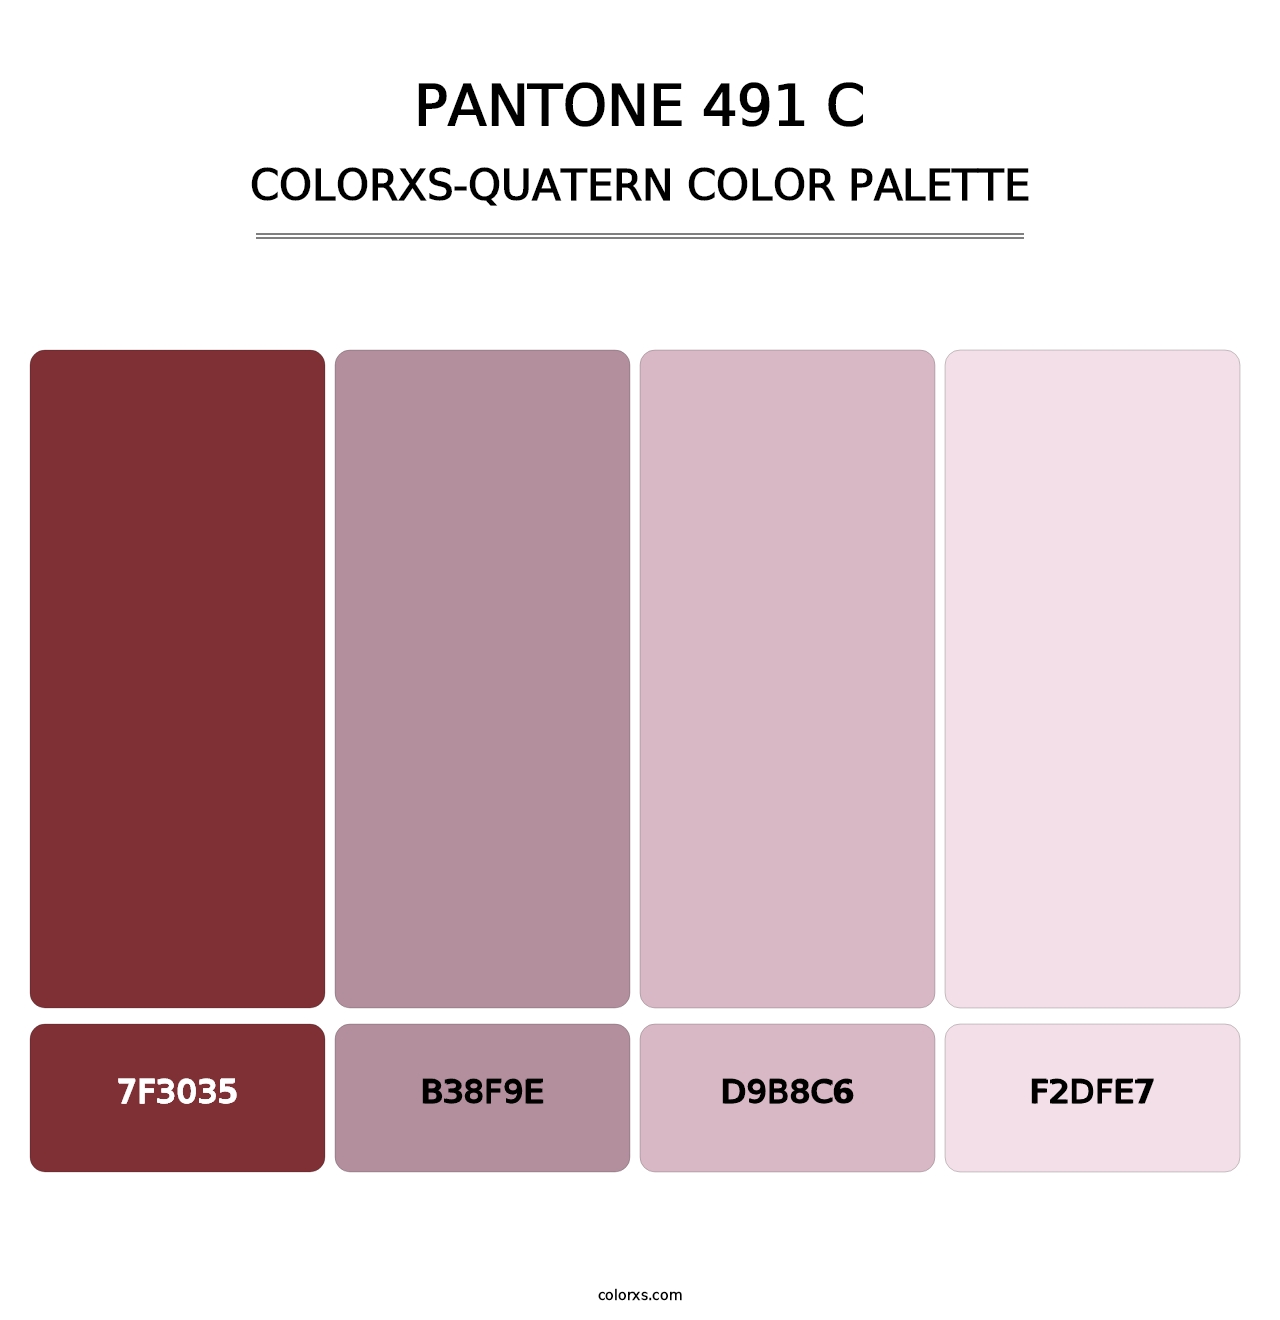 PANTONE 491 C - Colorxs Quatern Palette